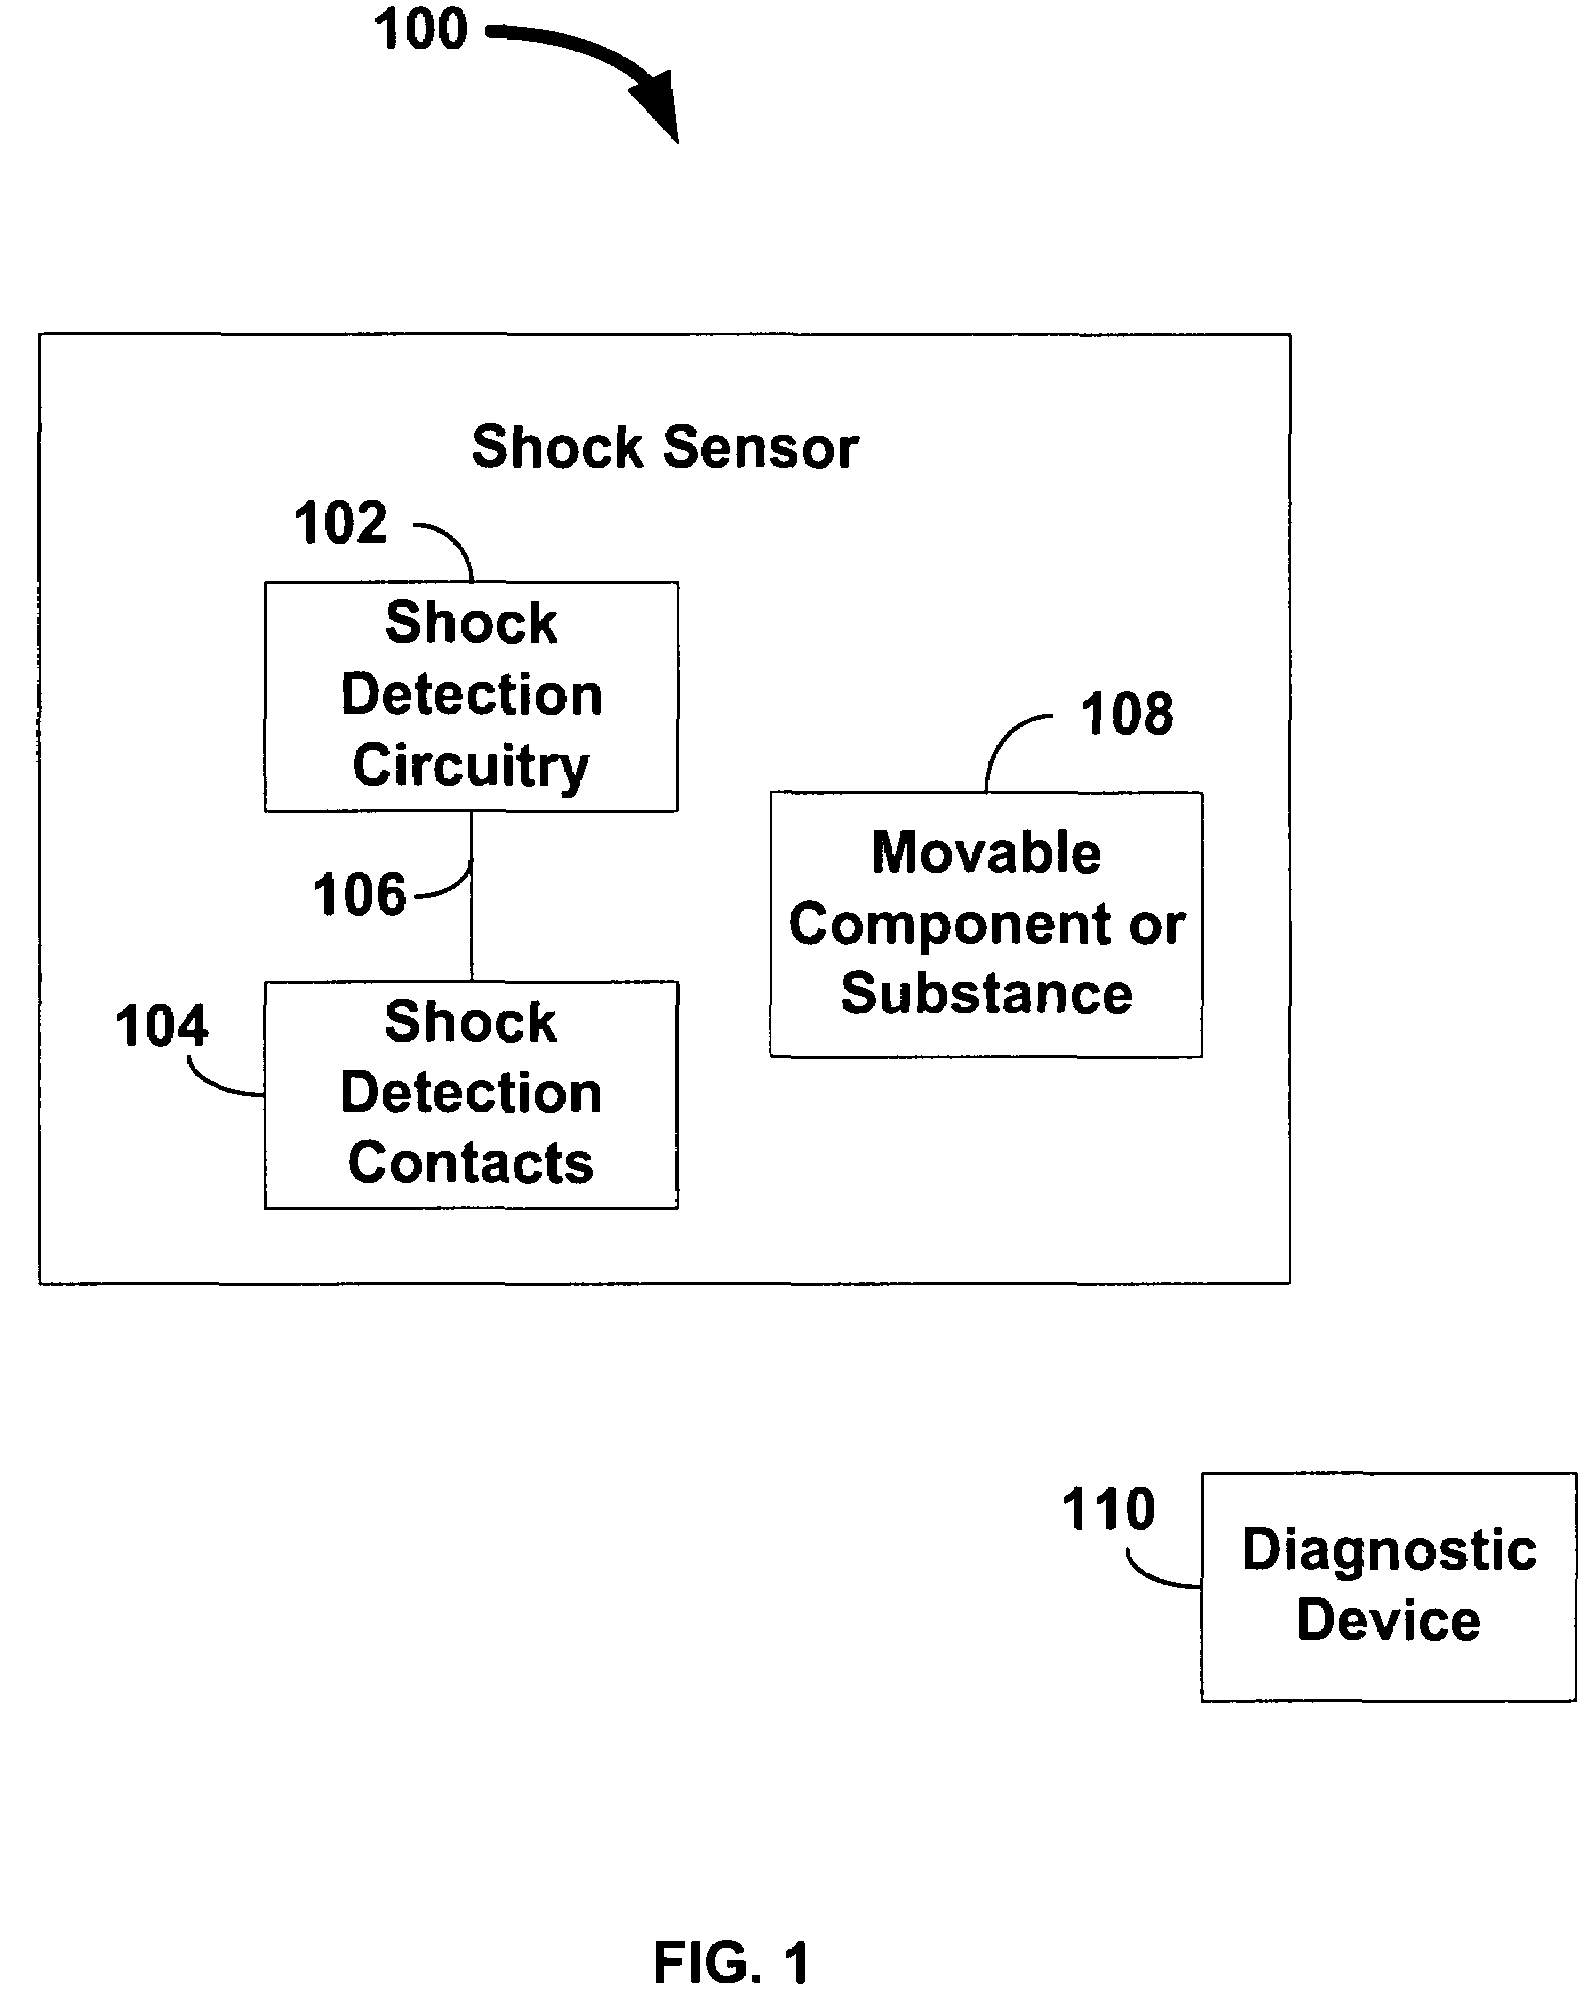 Mounted shock sensor